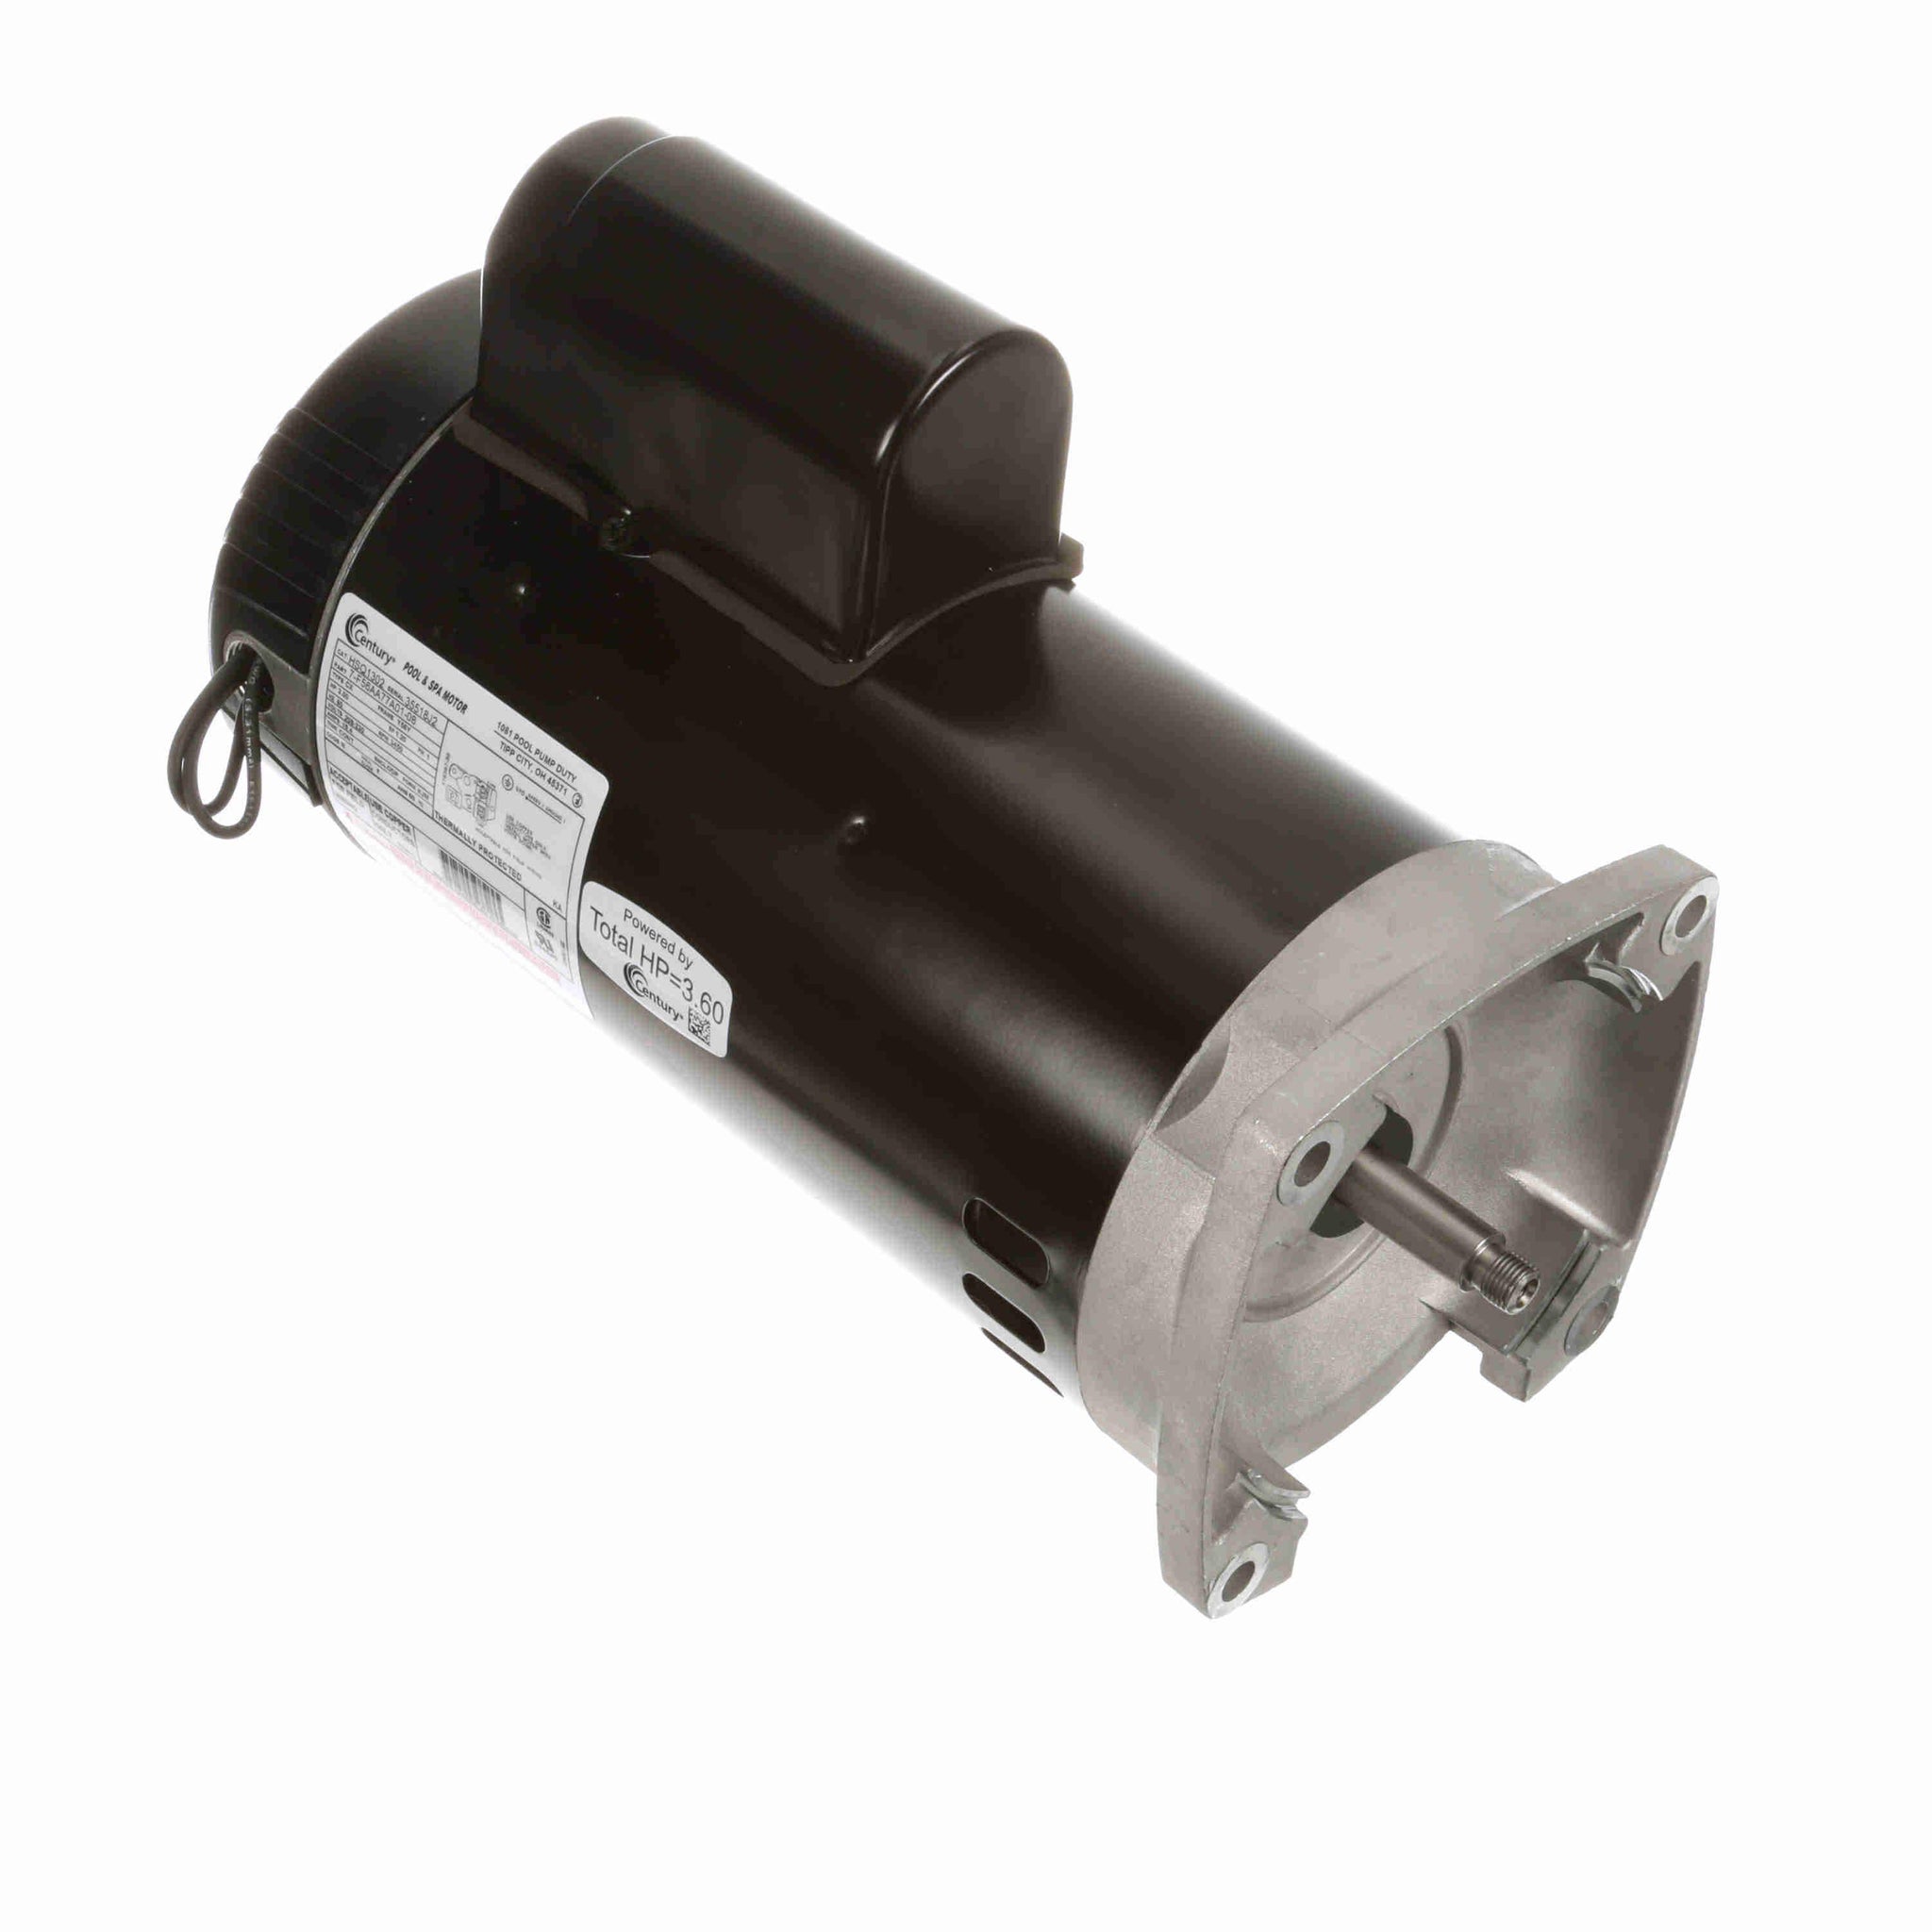 HSQ1302 - 3.00 HP Pool Pump Motor, 1 phase, 3600 RPM, 208-230 V, 56Y Frame, ODP - Hardware & Moreee